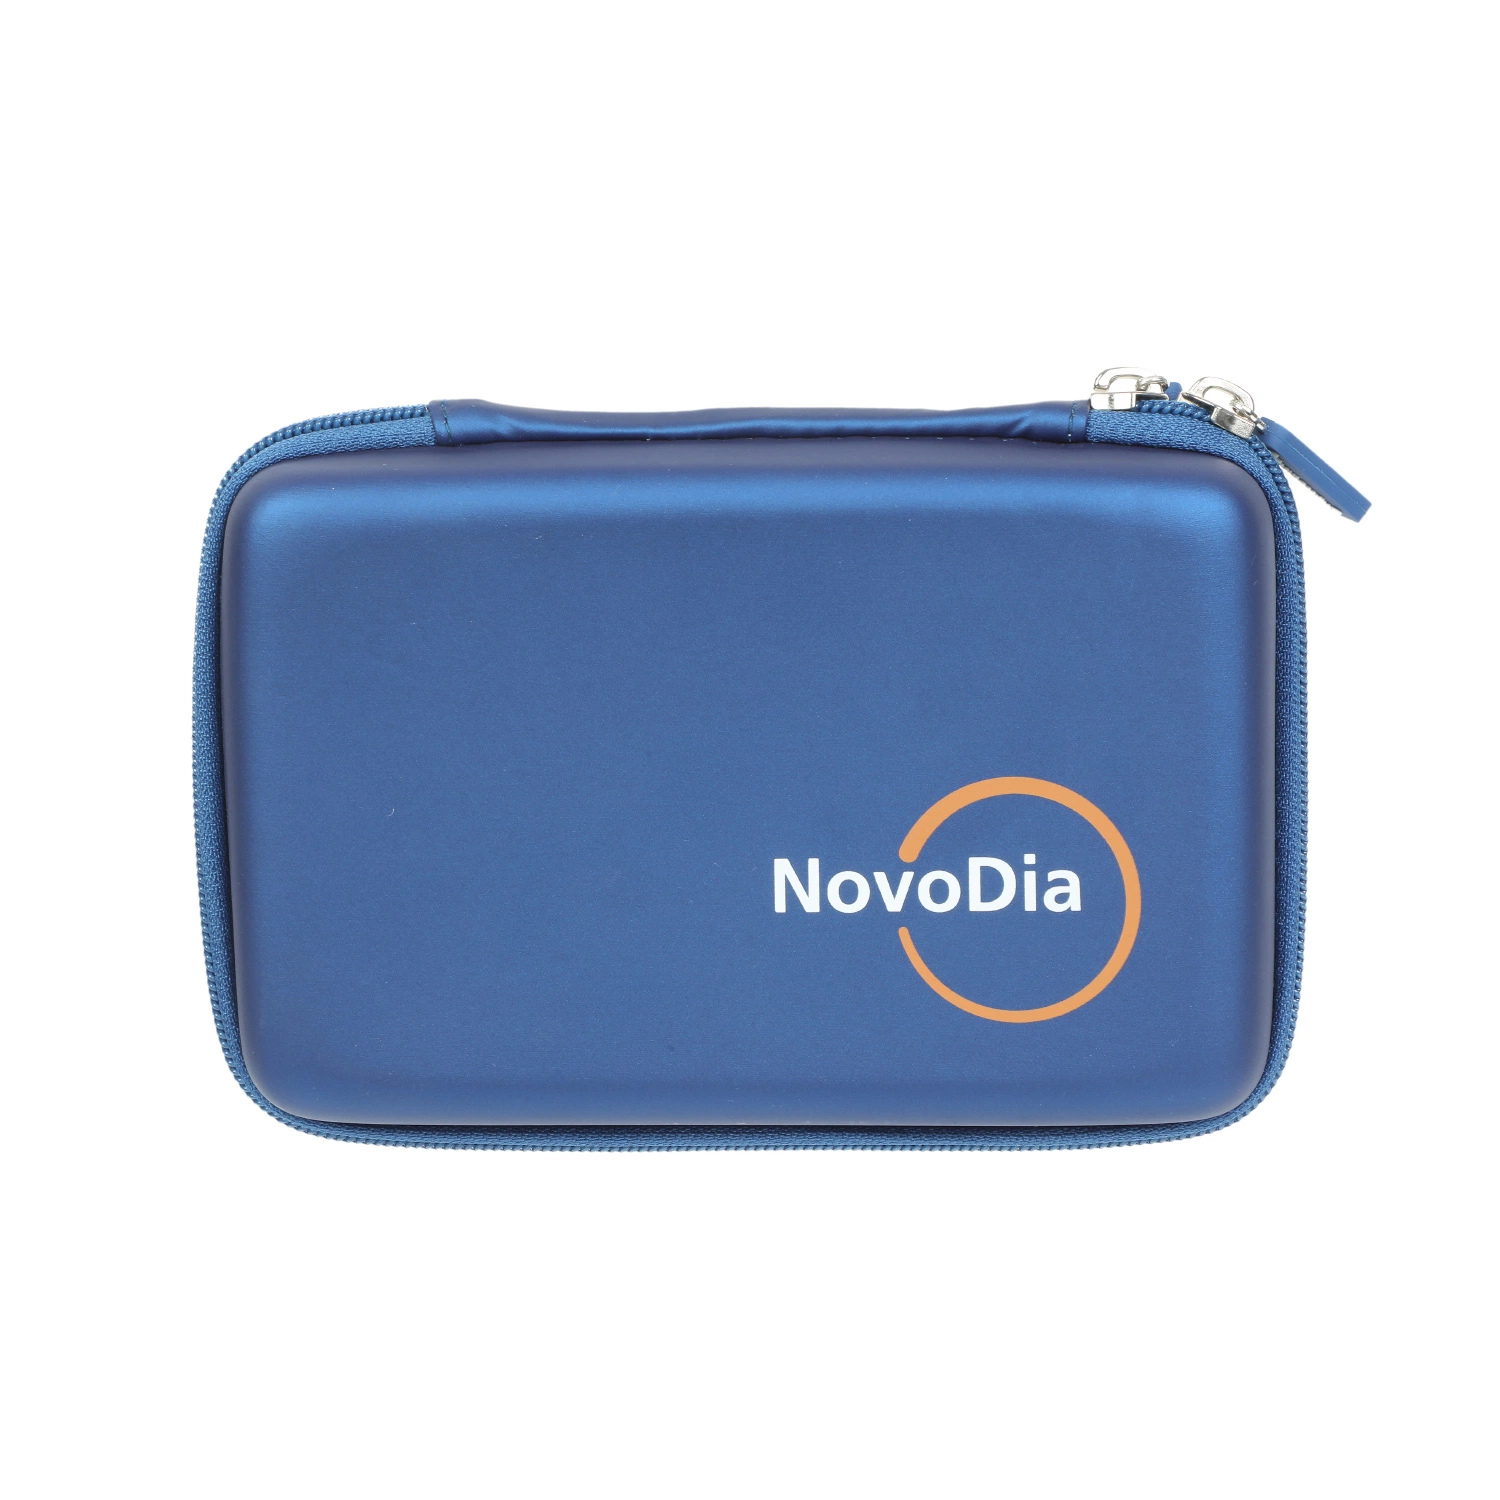 Cuir synthétique bleu EVA Mallette de transport léger et portable sac rigide boîte pour kit d'outils